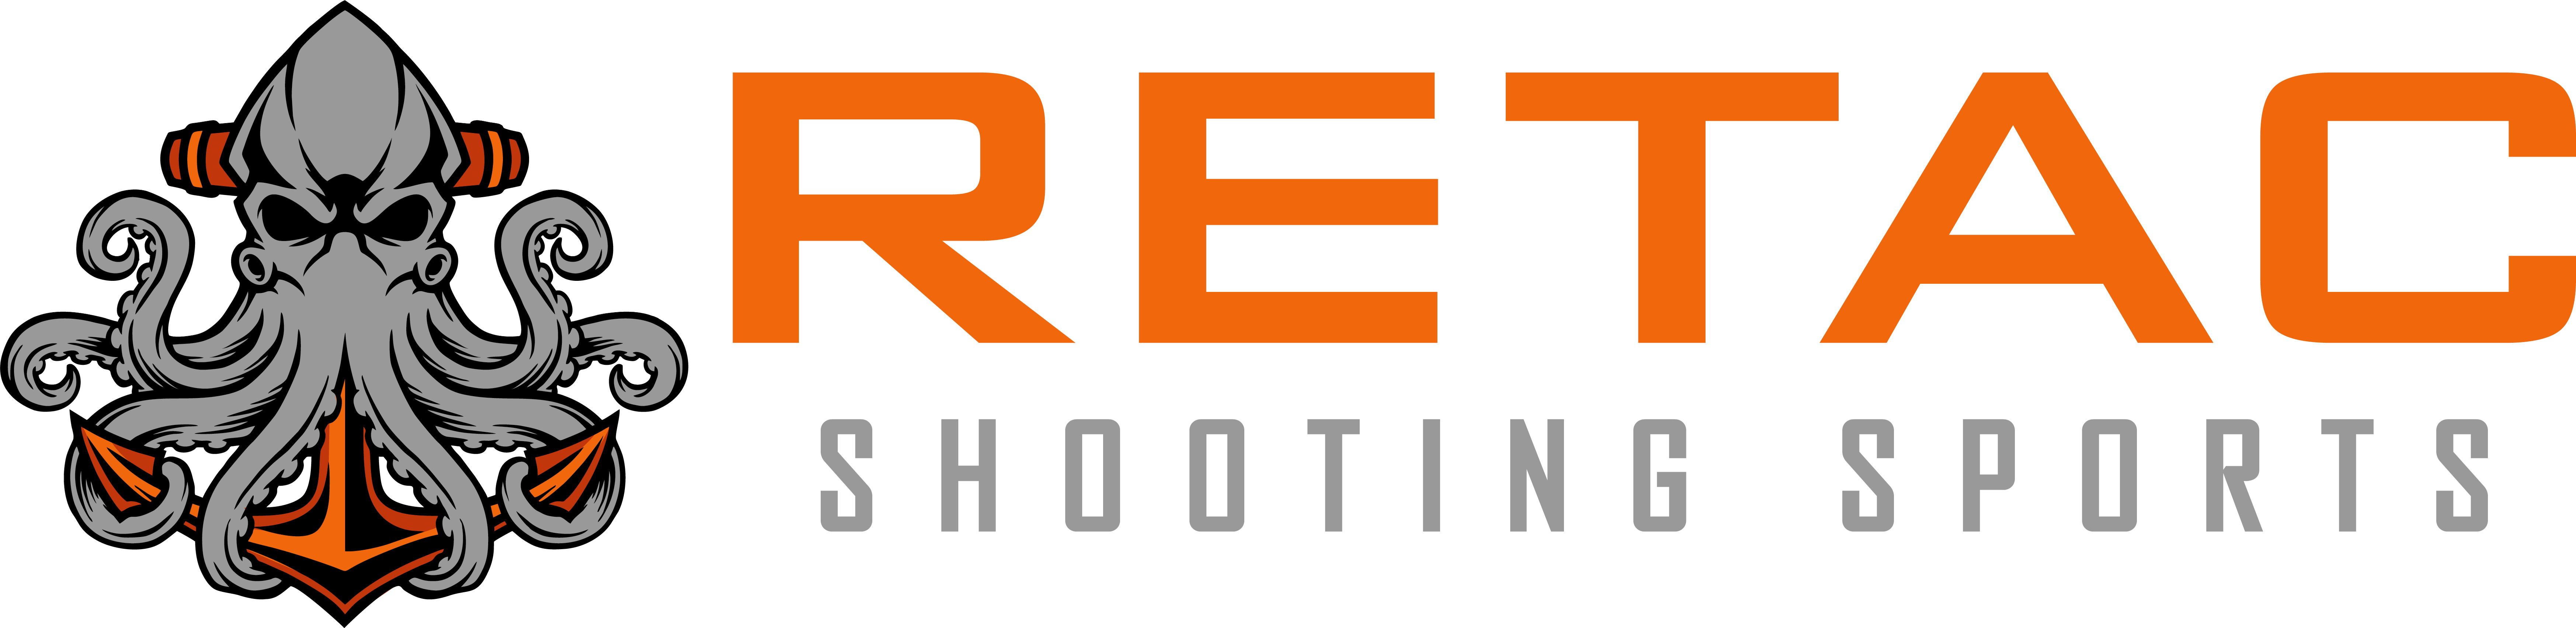 Retac Shooting Sports